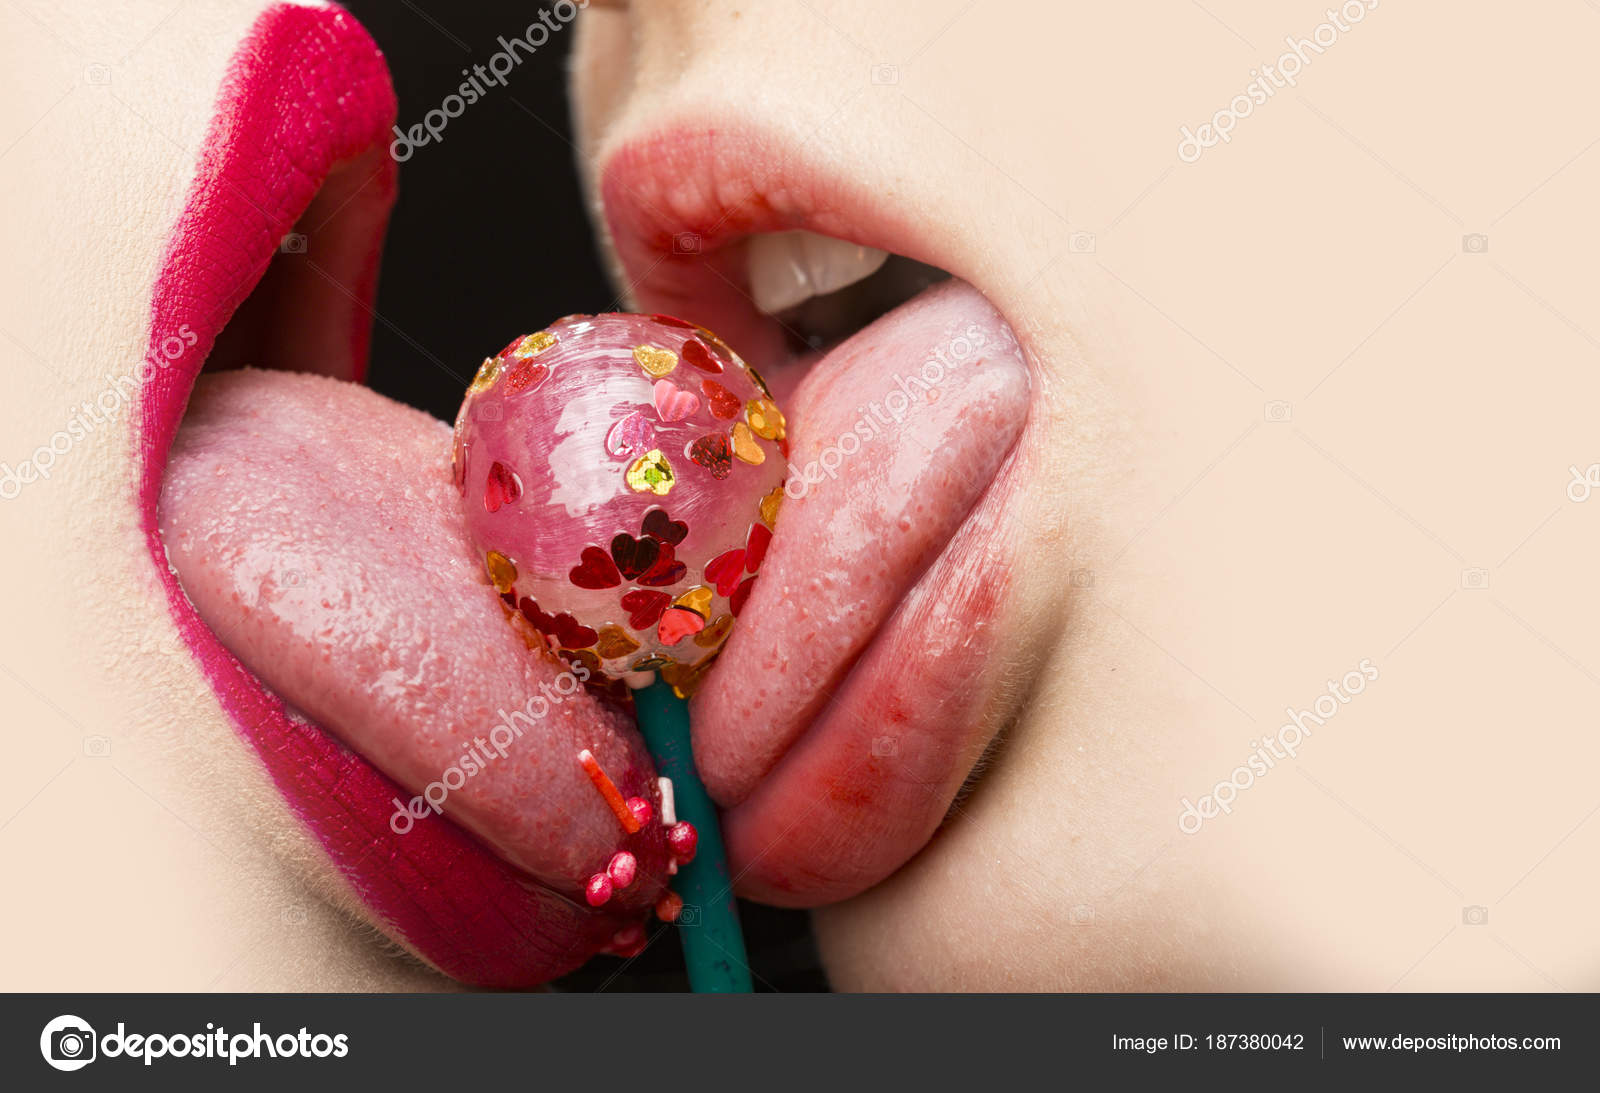 noir lesbiennes langue baiser